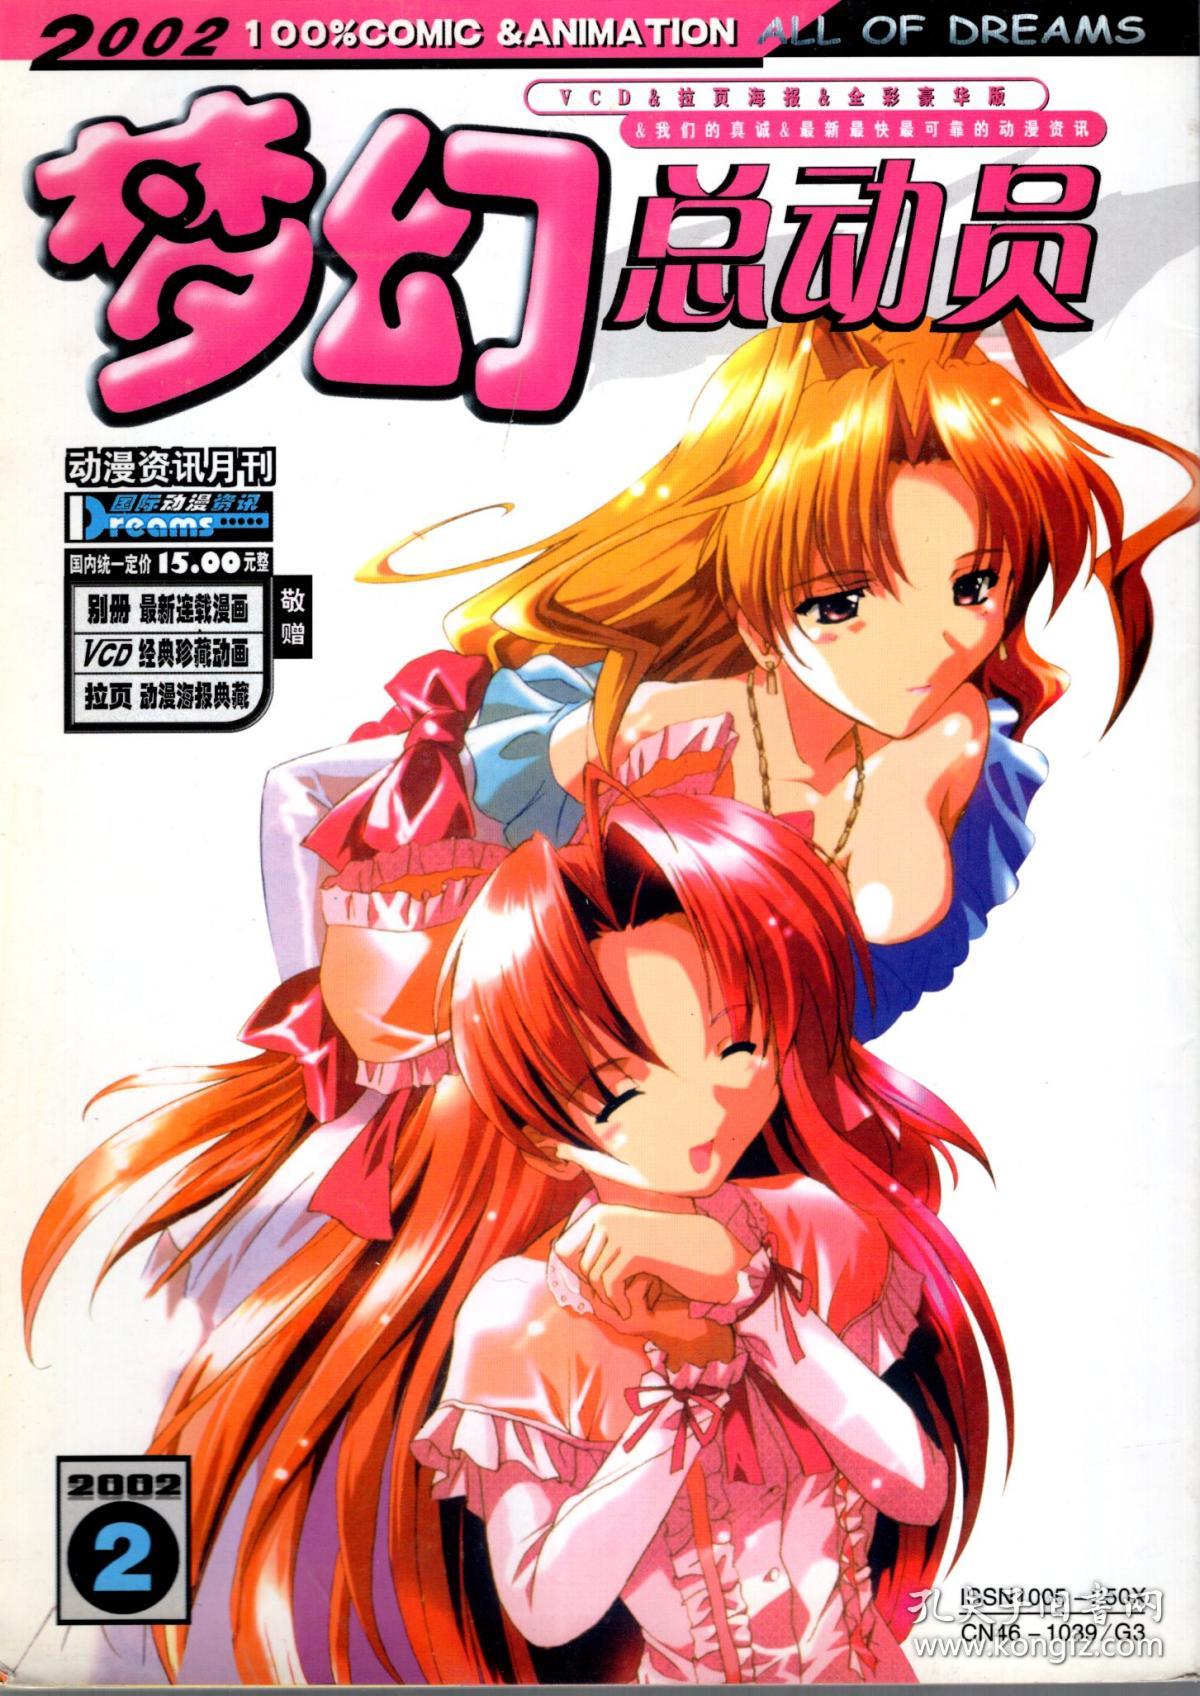 科园梦幻总动员.动漫资讯期刊.2002年第1、2期.2册合售